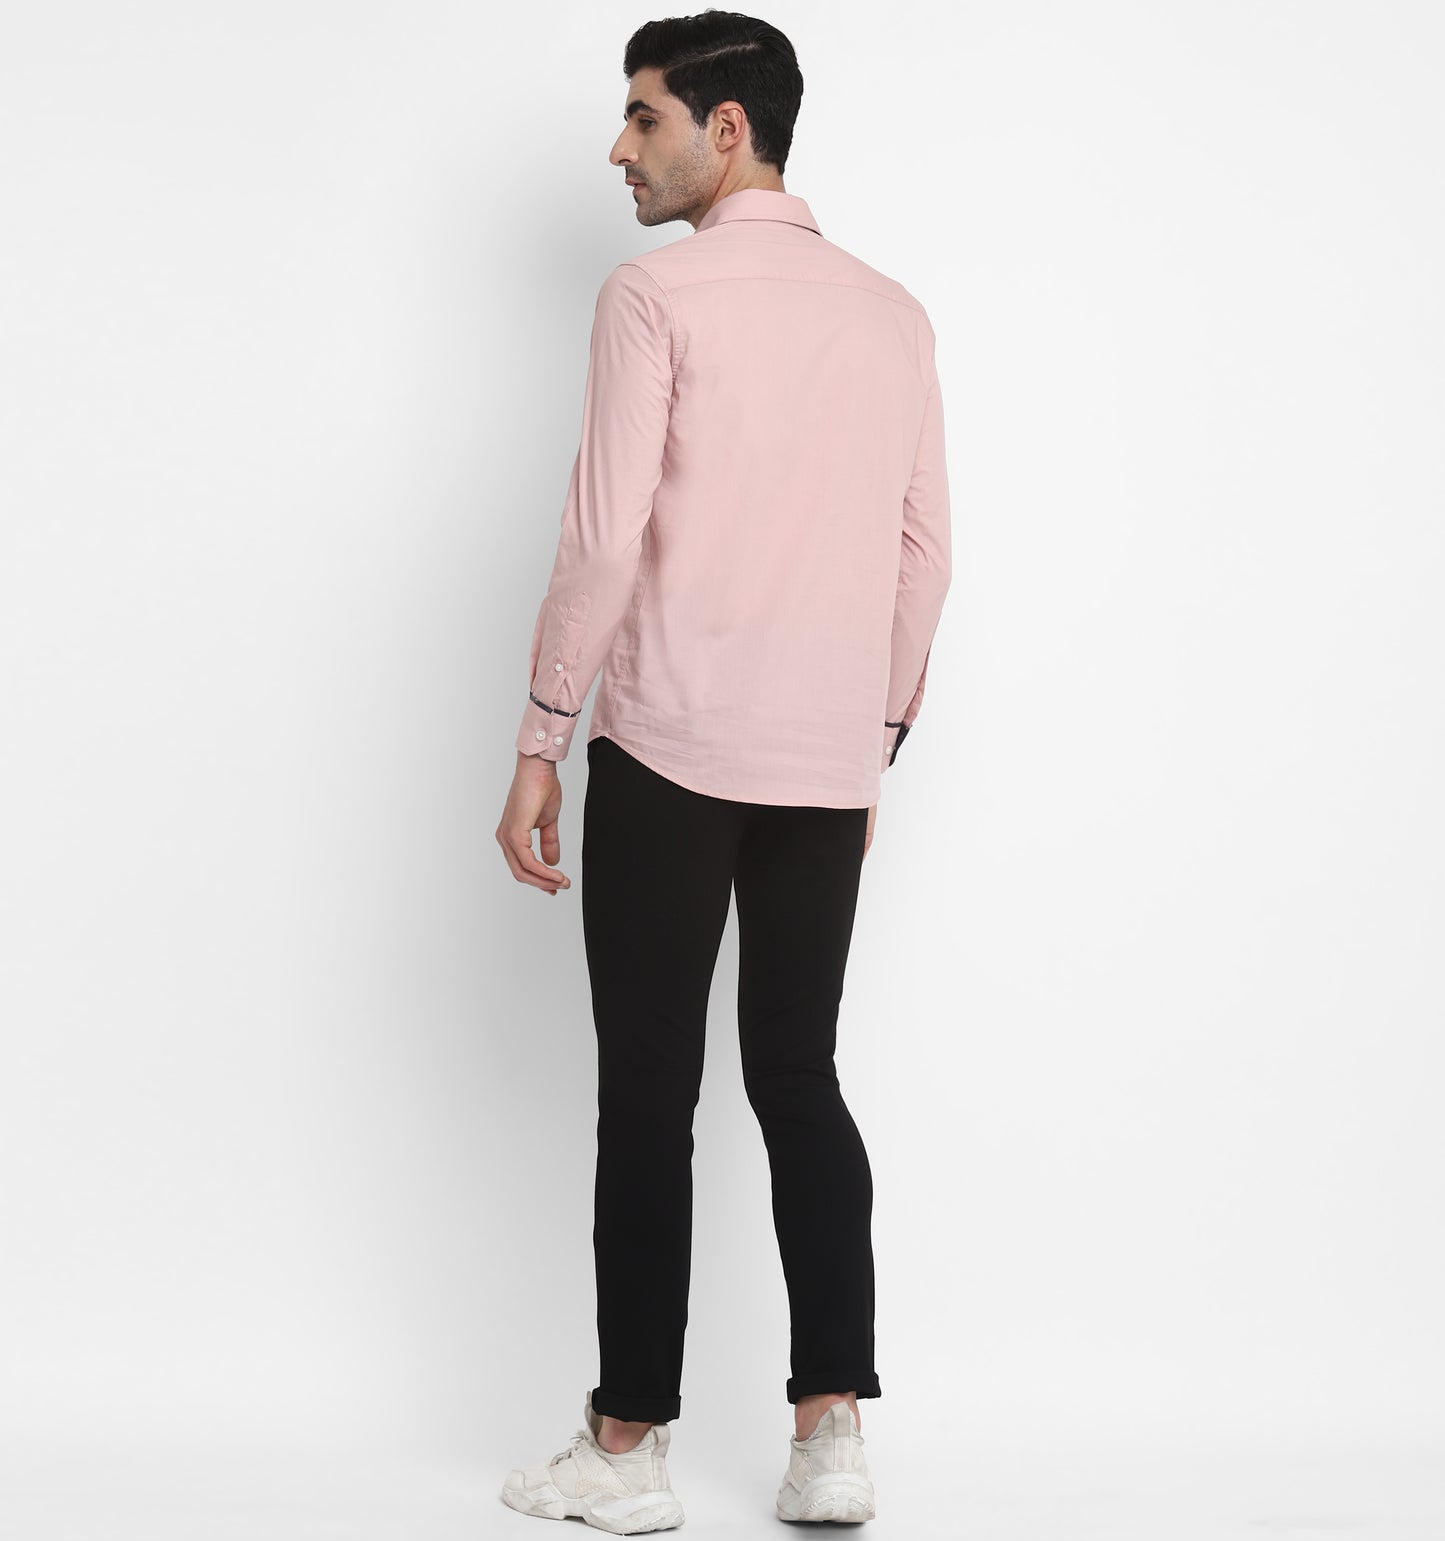 Pastel Pink Zipper Shirt